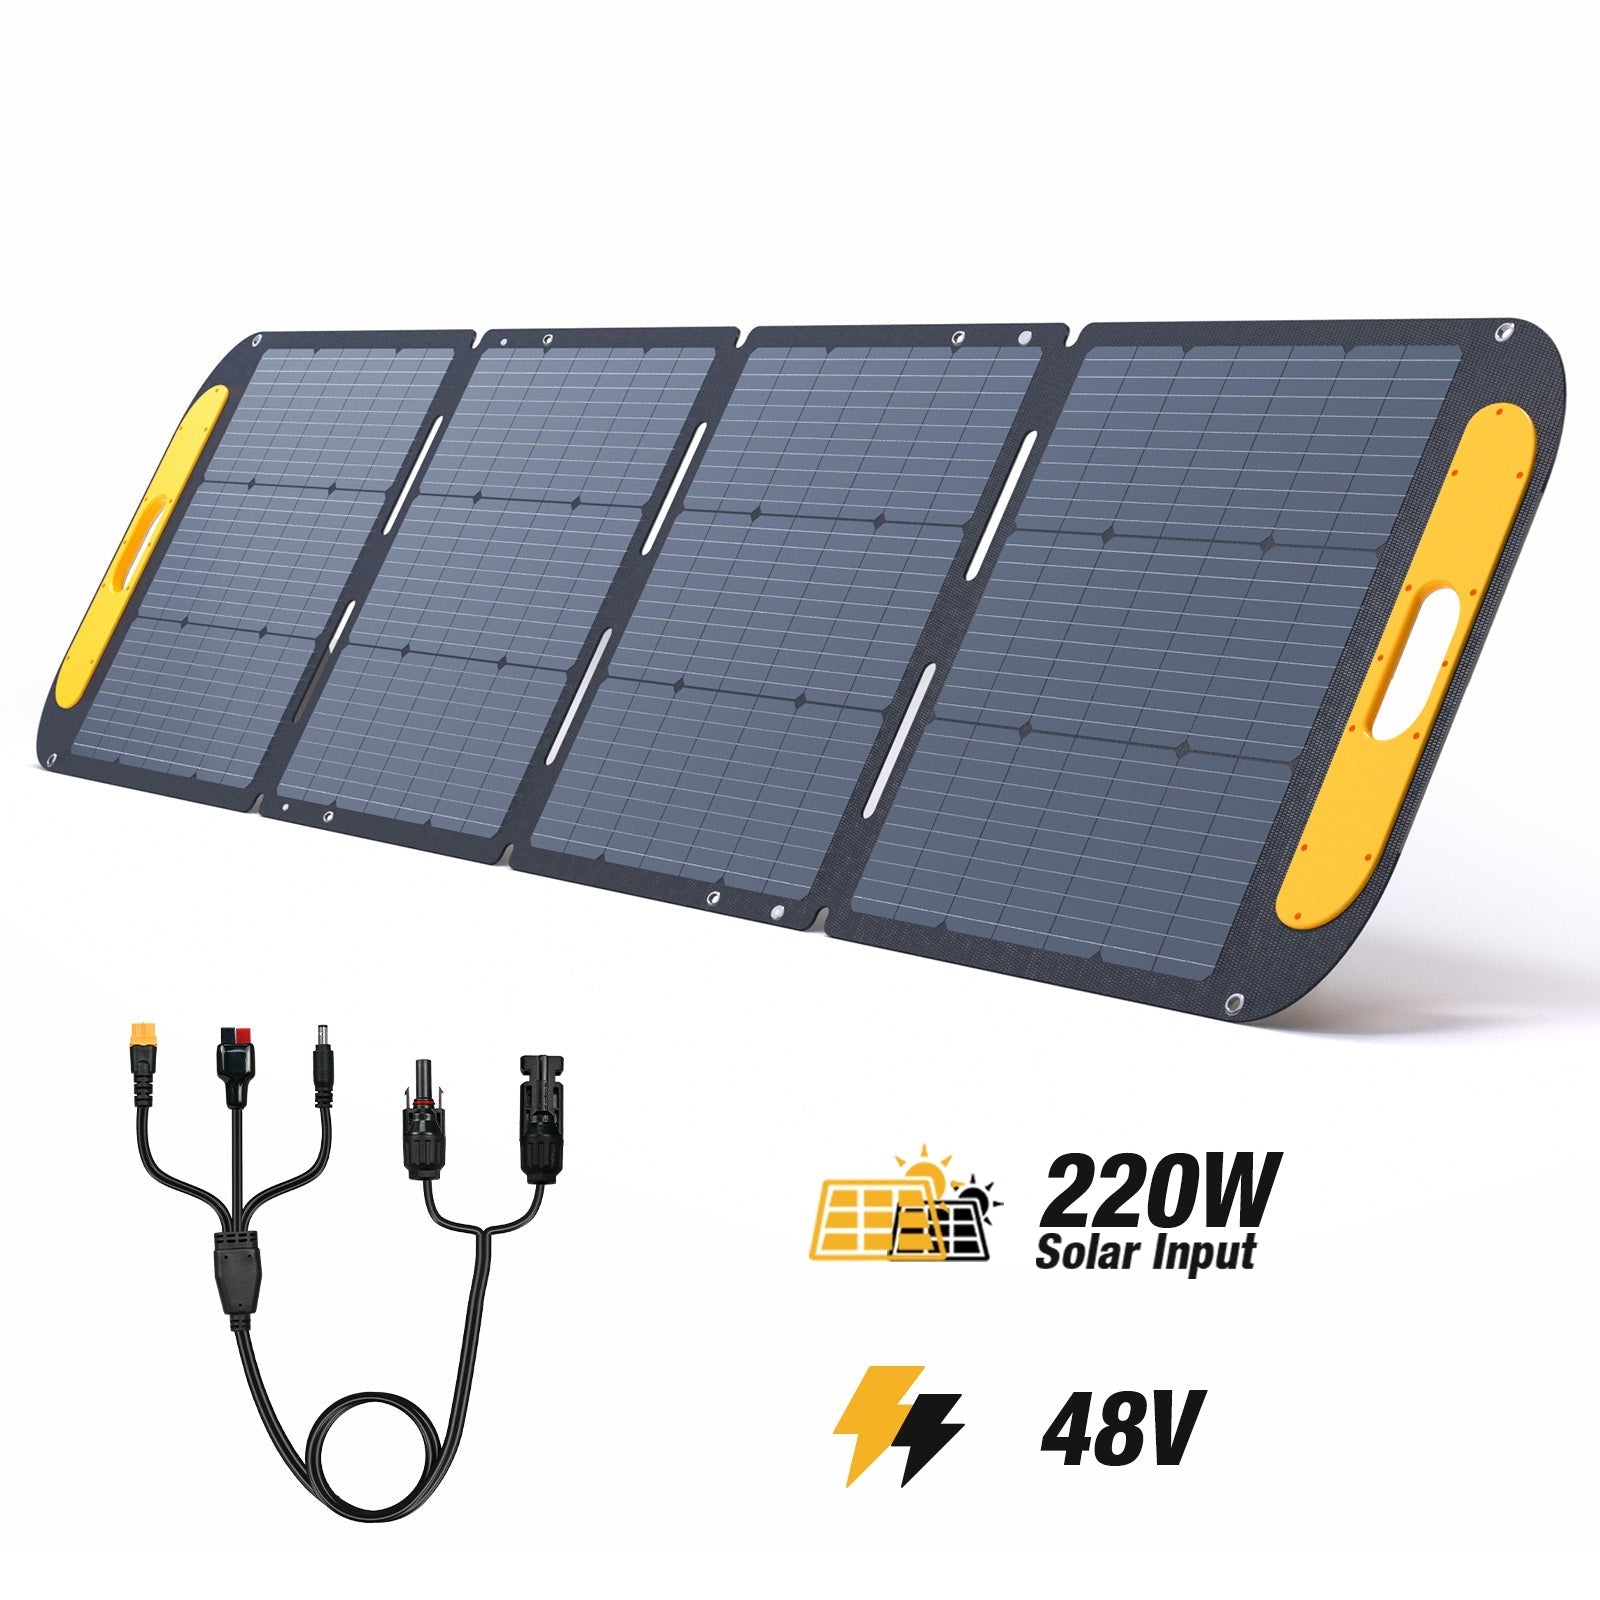 VTOMAN 220W Pro Faltbares tragbares Solarpanel